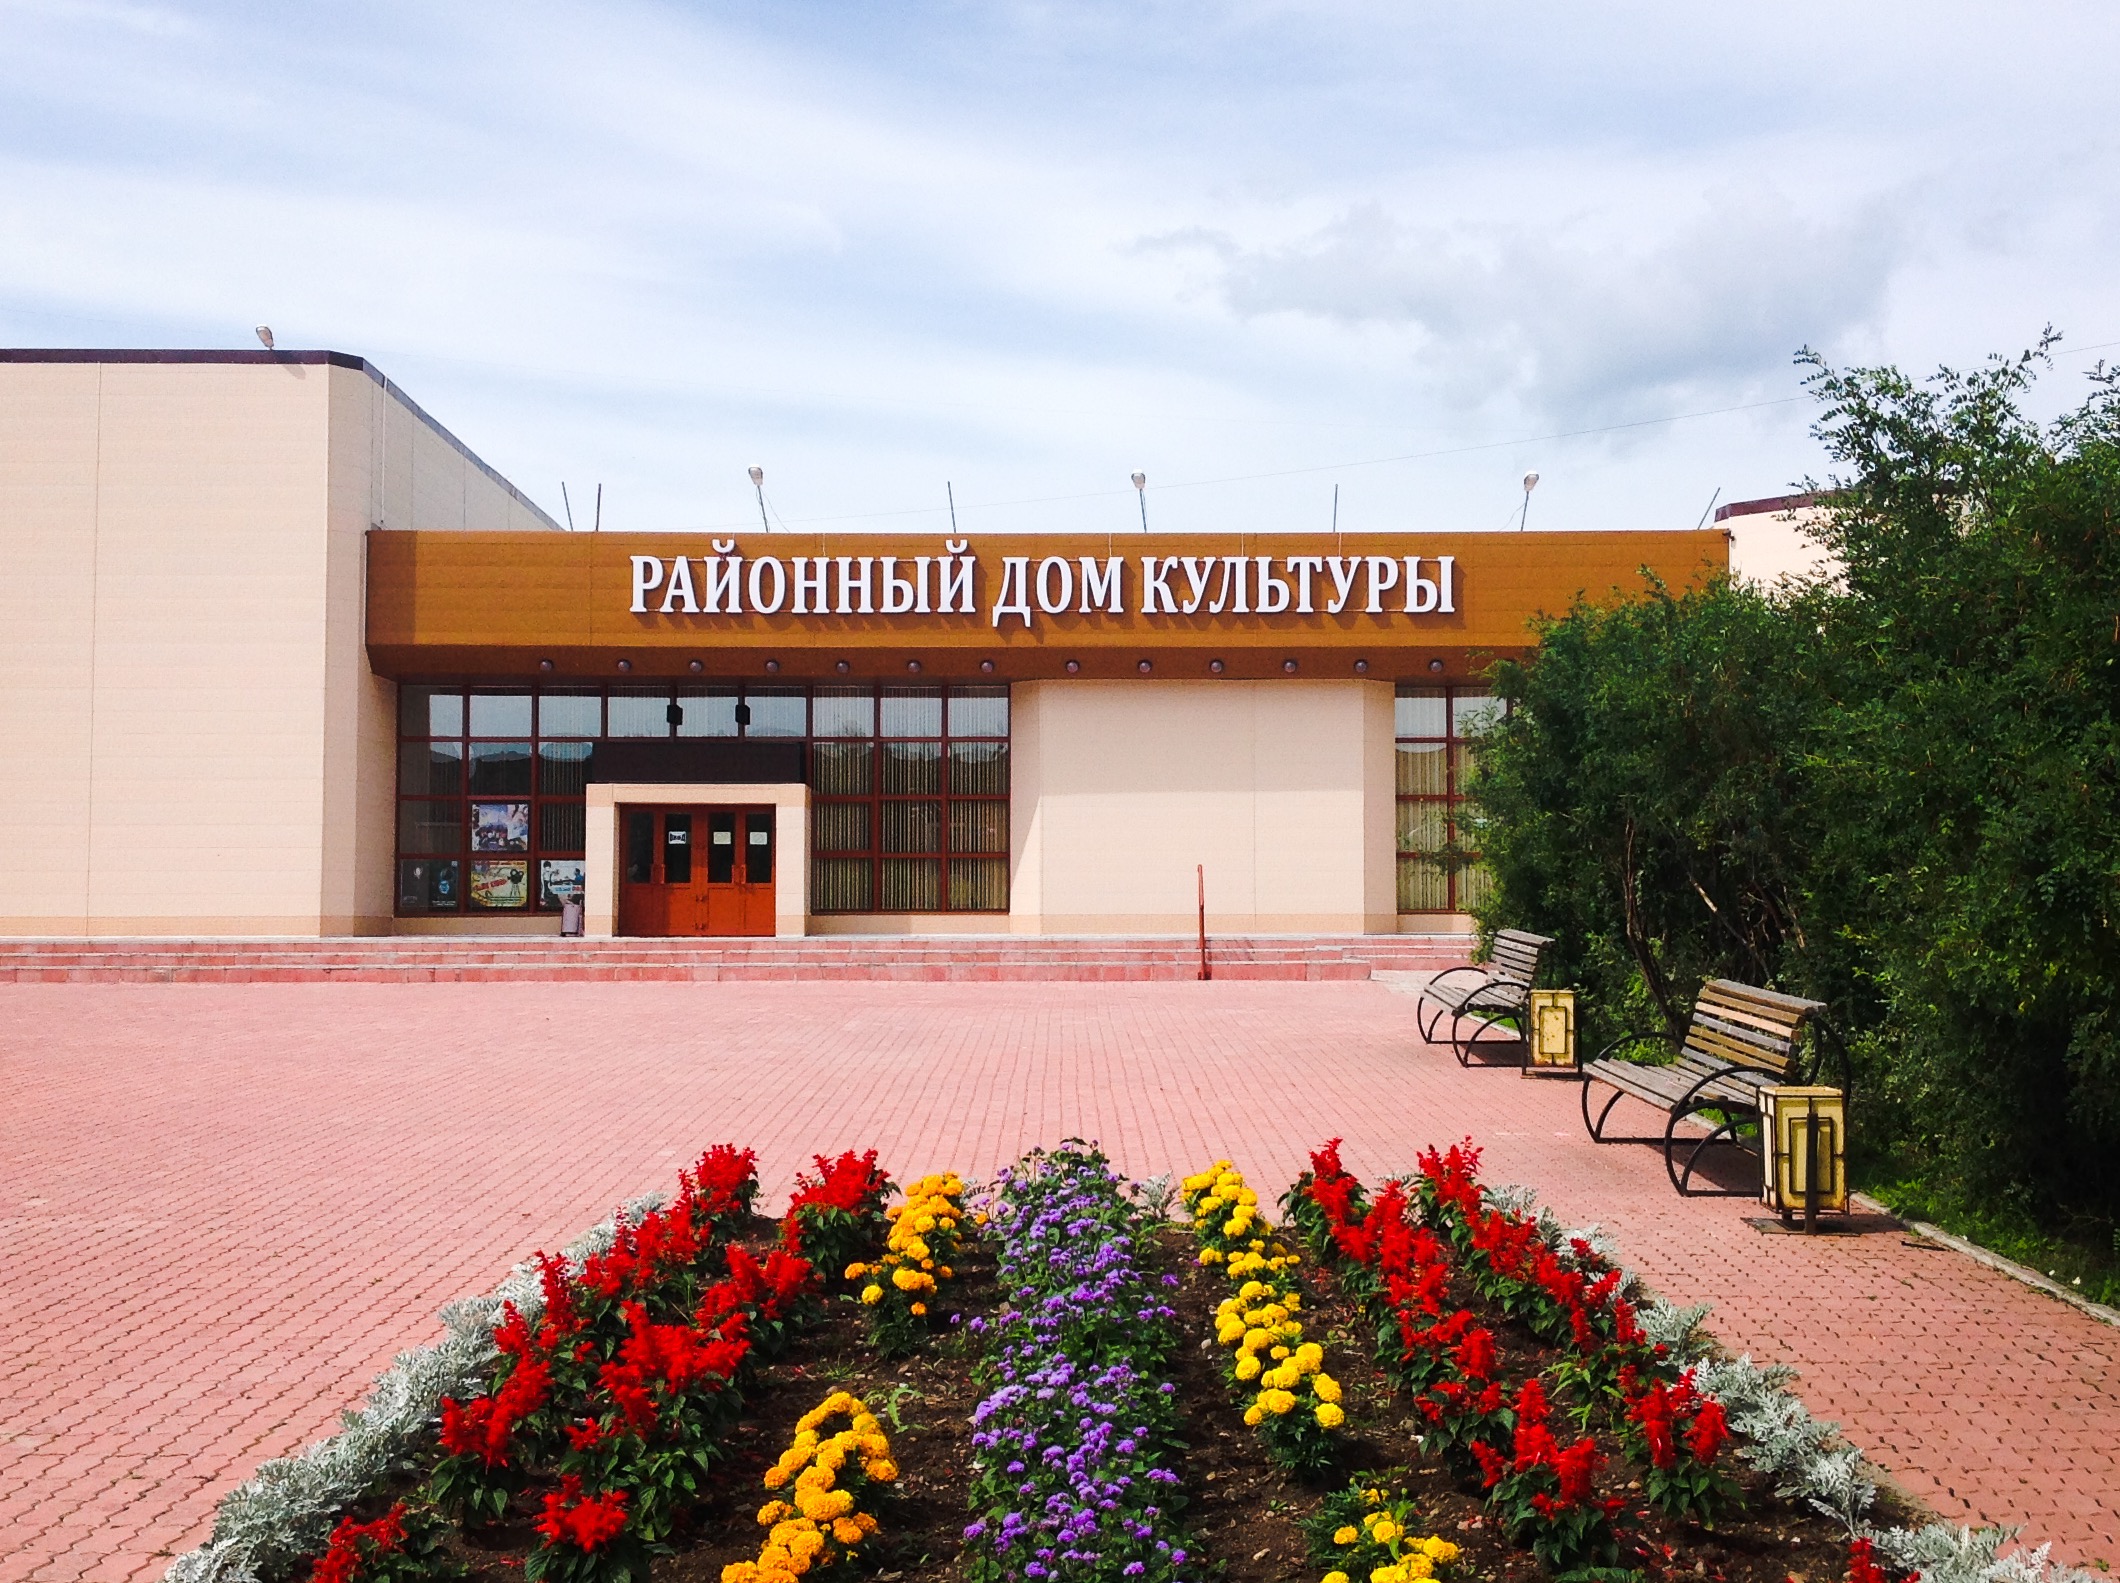 Районный дом культуры Солнечный Хабаровский край